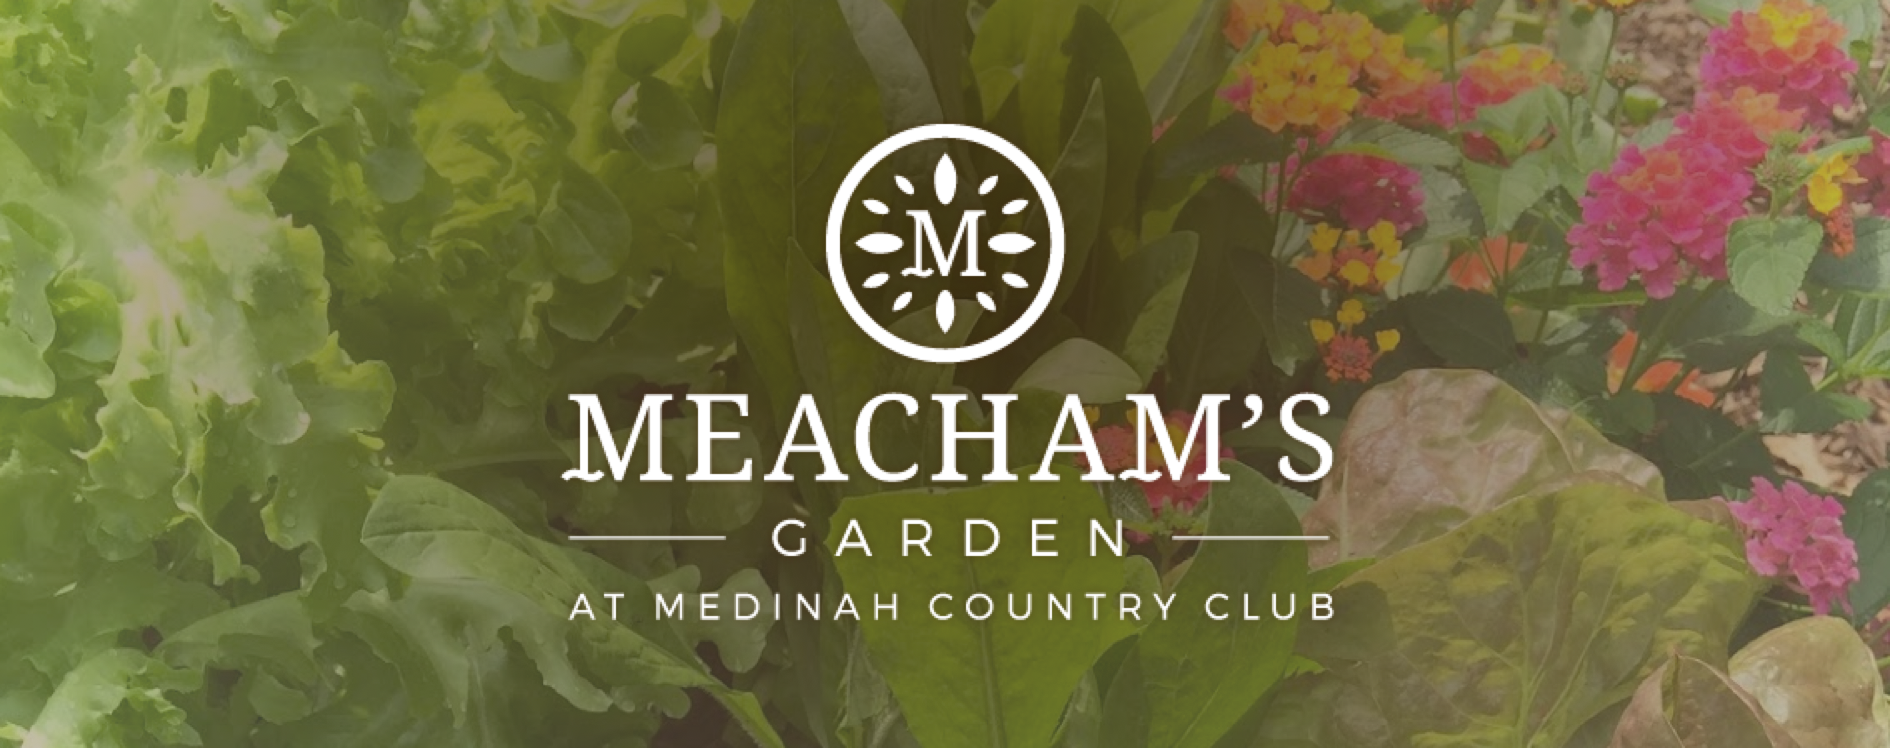 Meacham's Garden